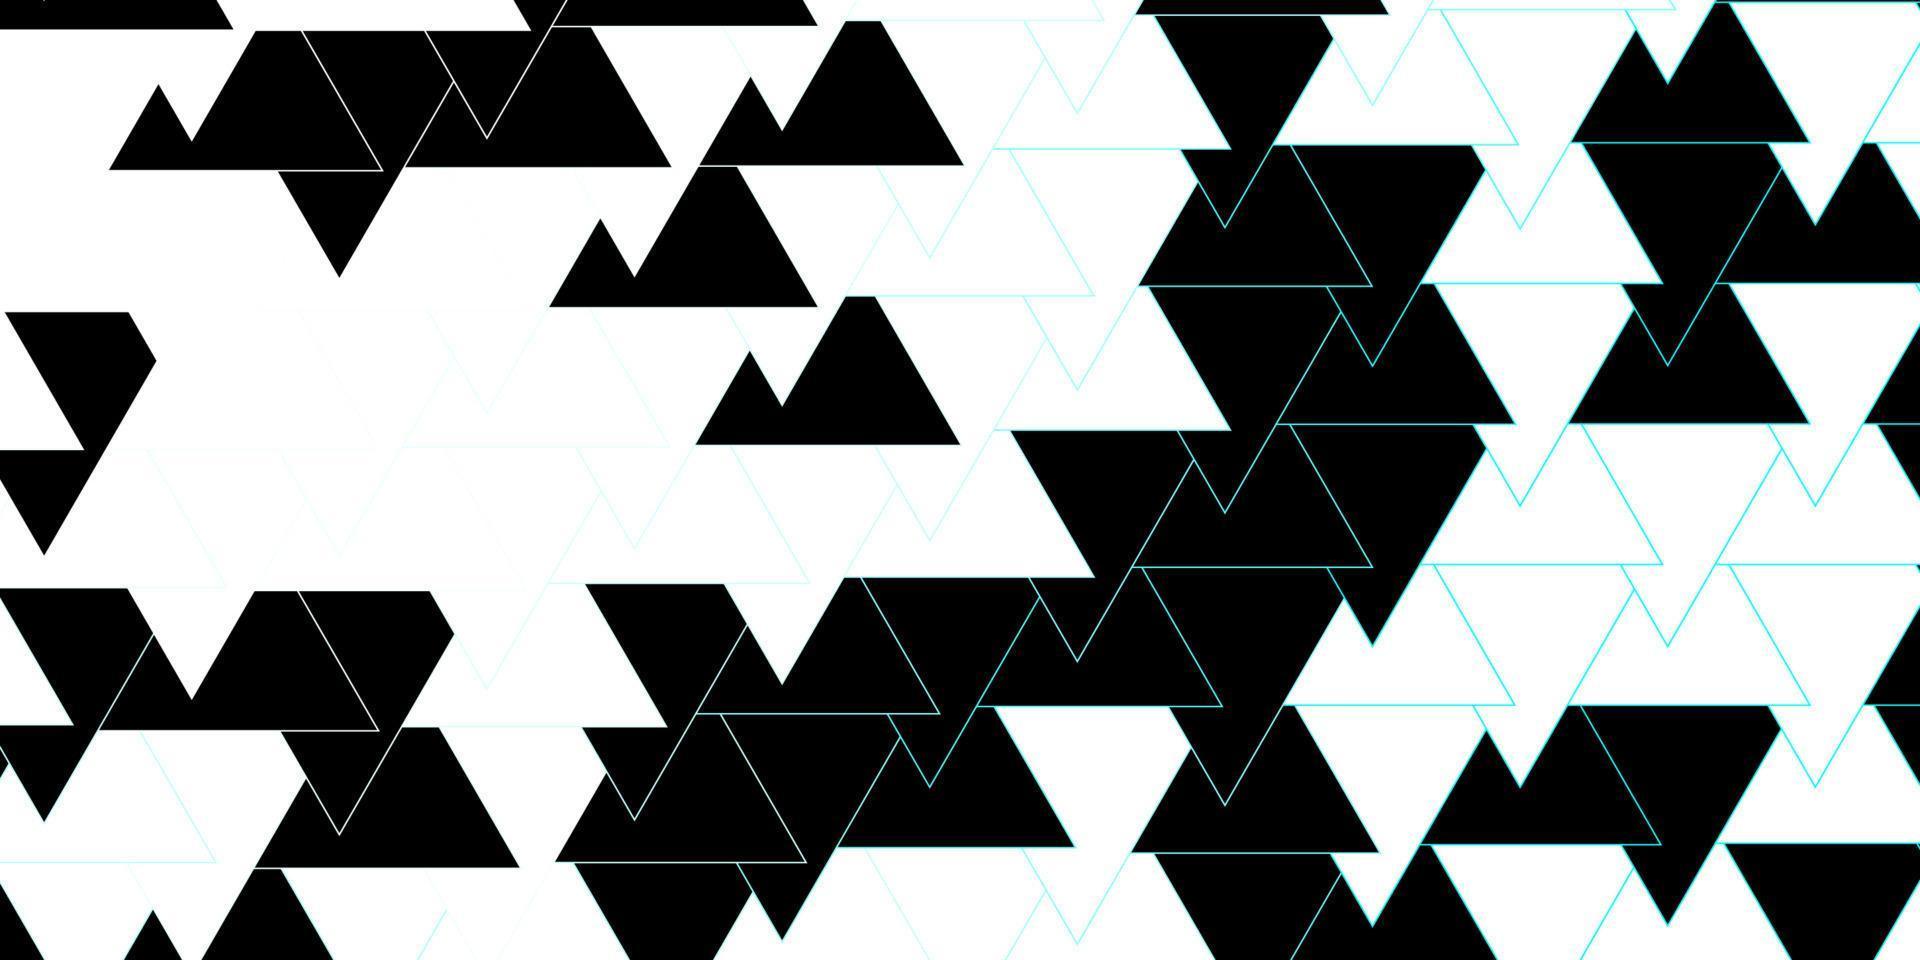 modèle vectoriel bleu foncé avec des lignes, des triangles.